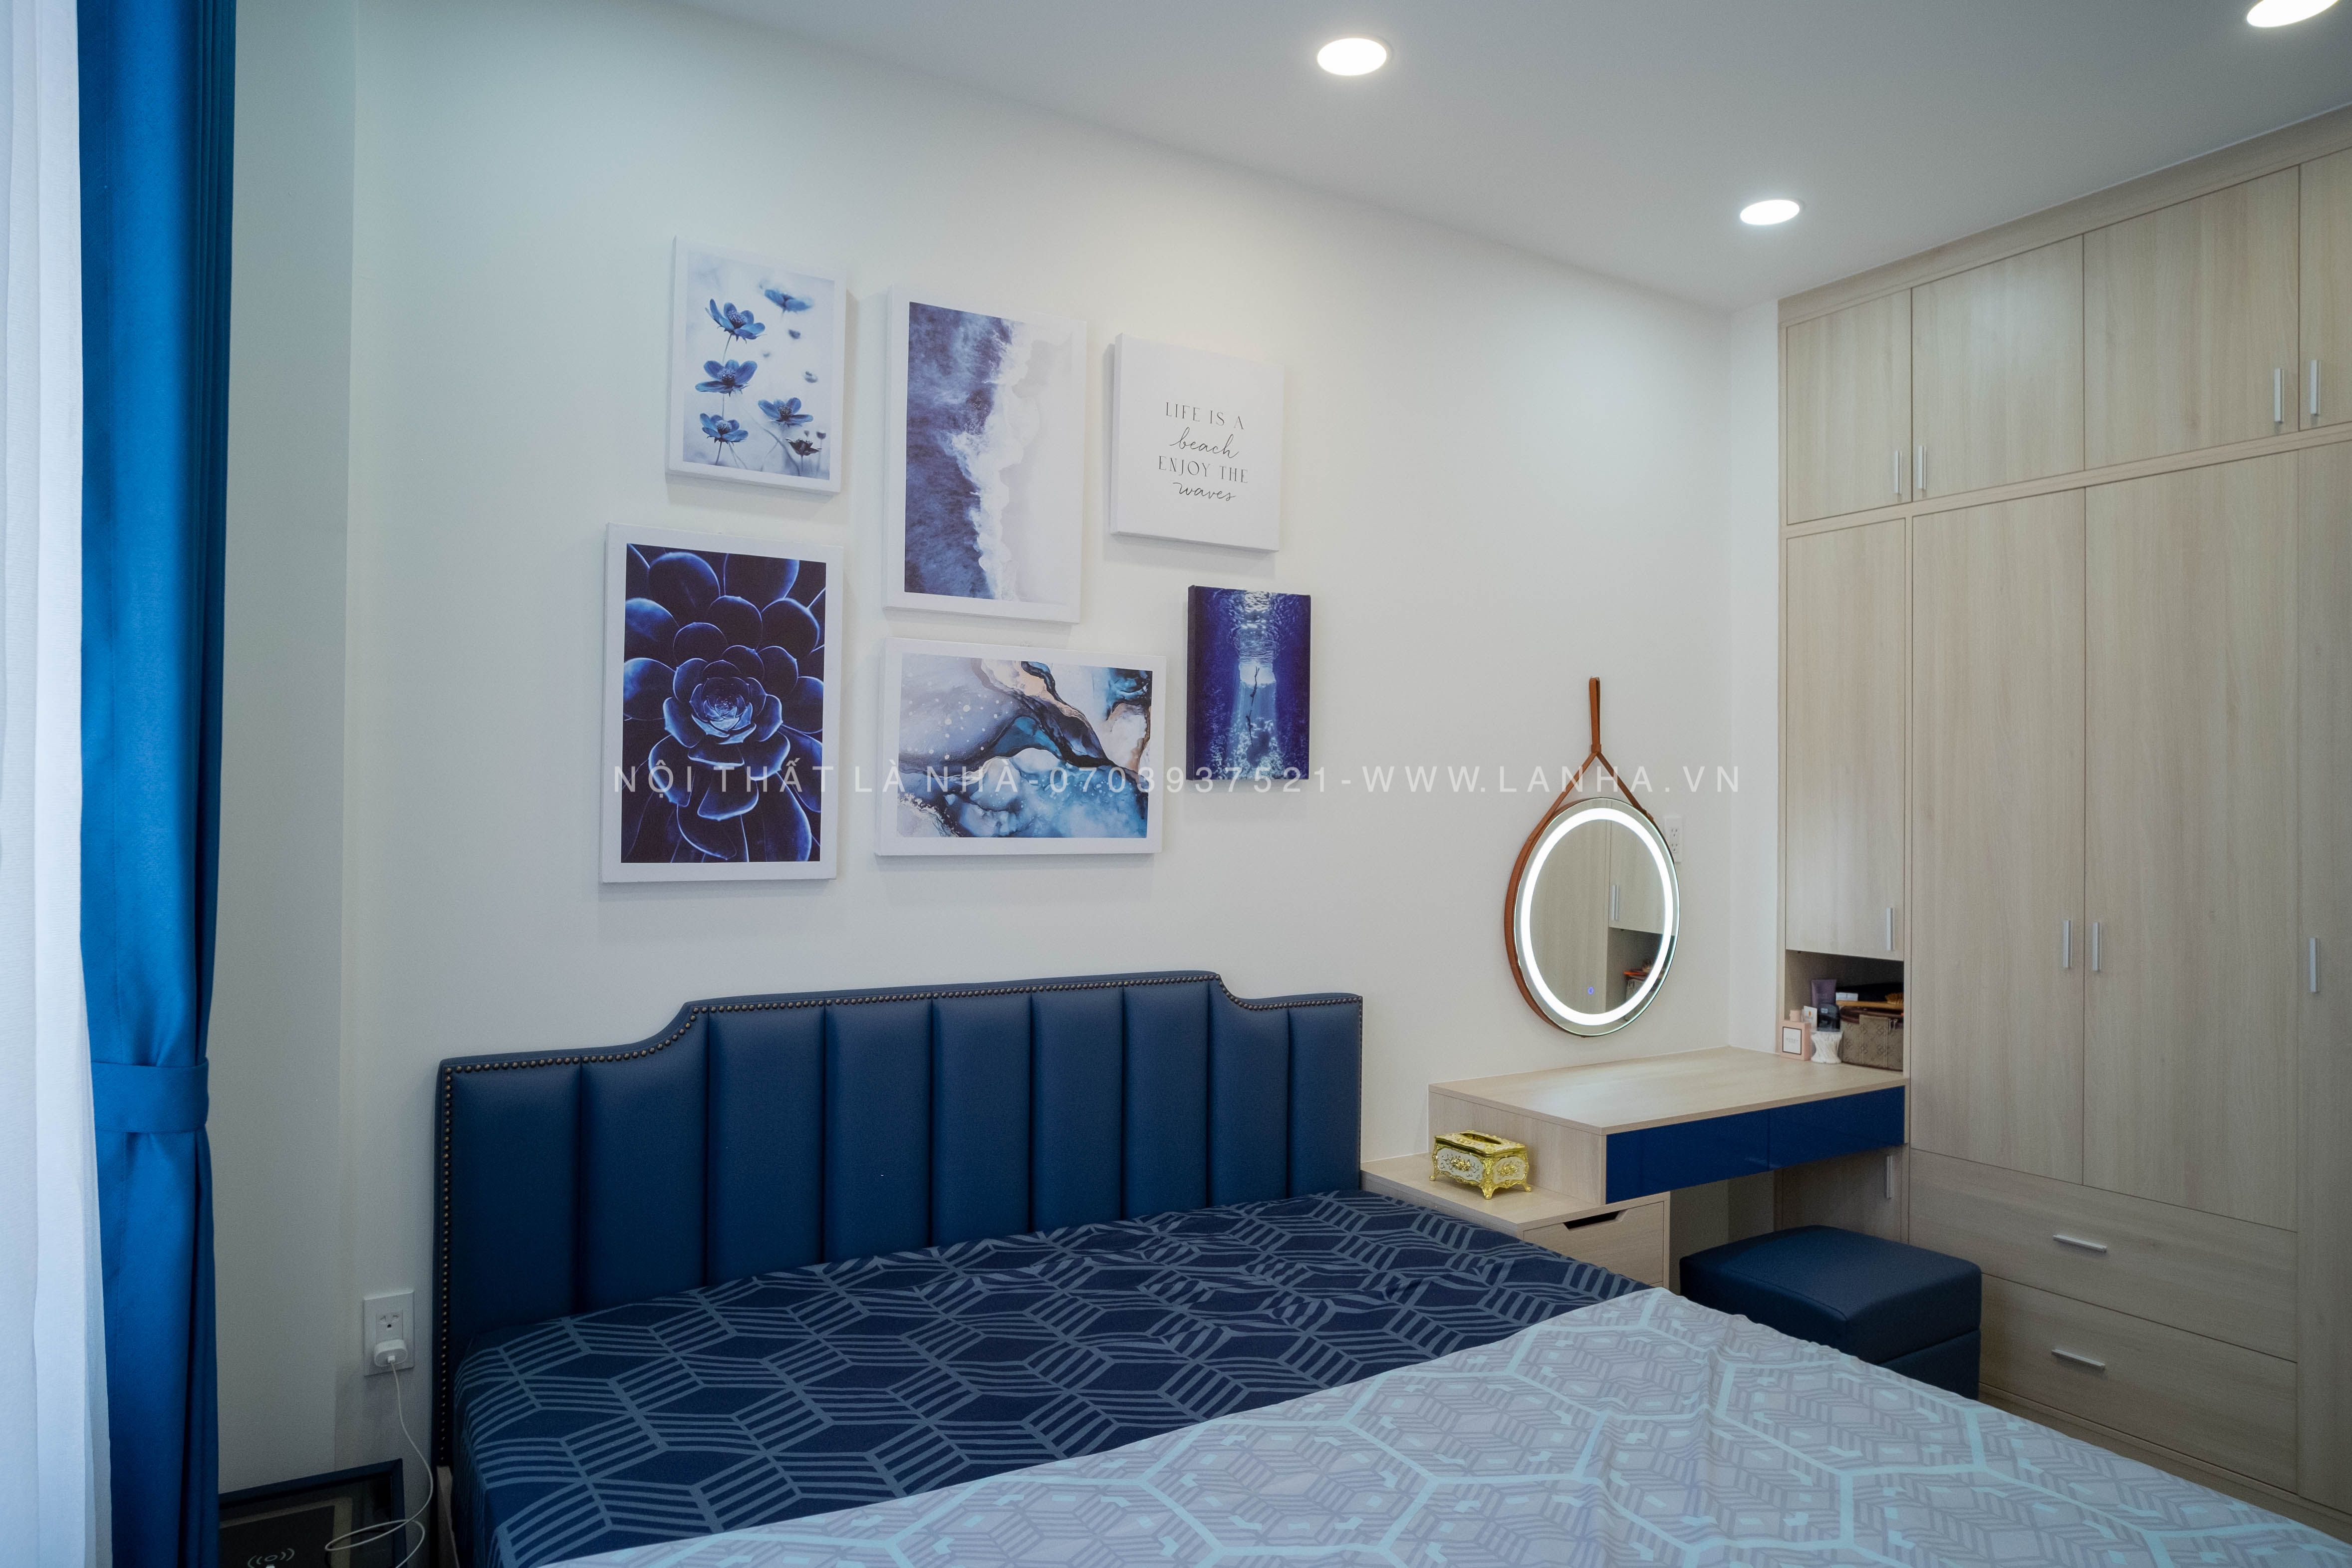 Thiết kế phòng ngủ màu trắng với điểm nhấn màu xanh